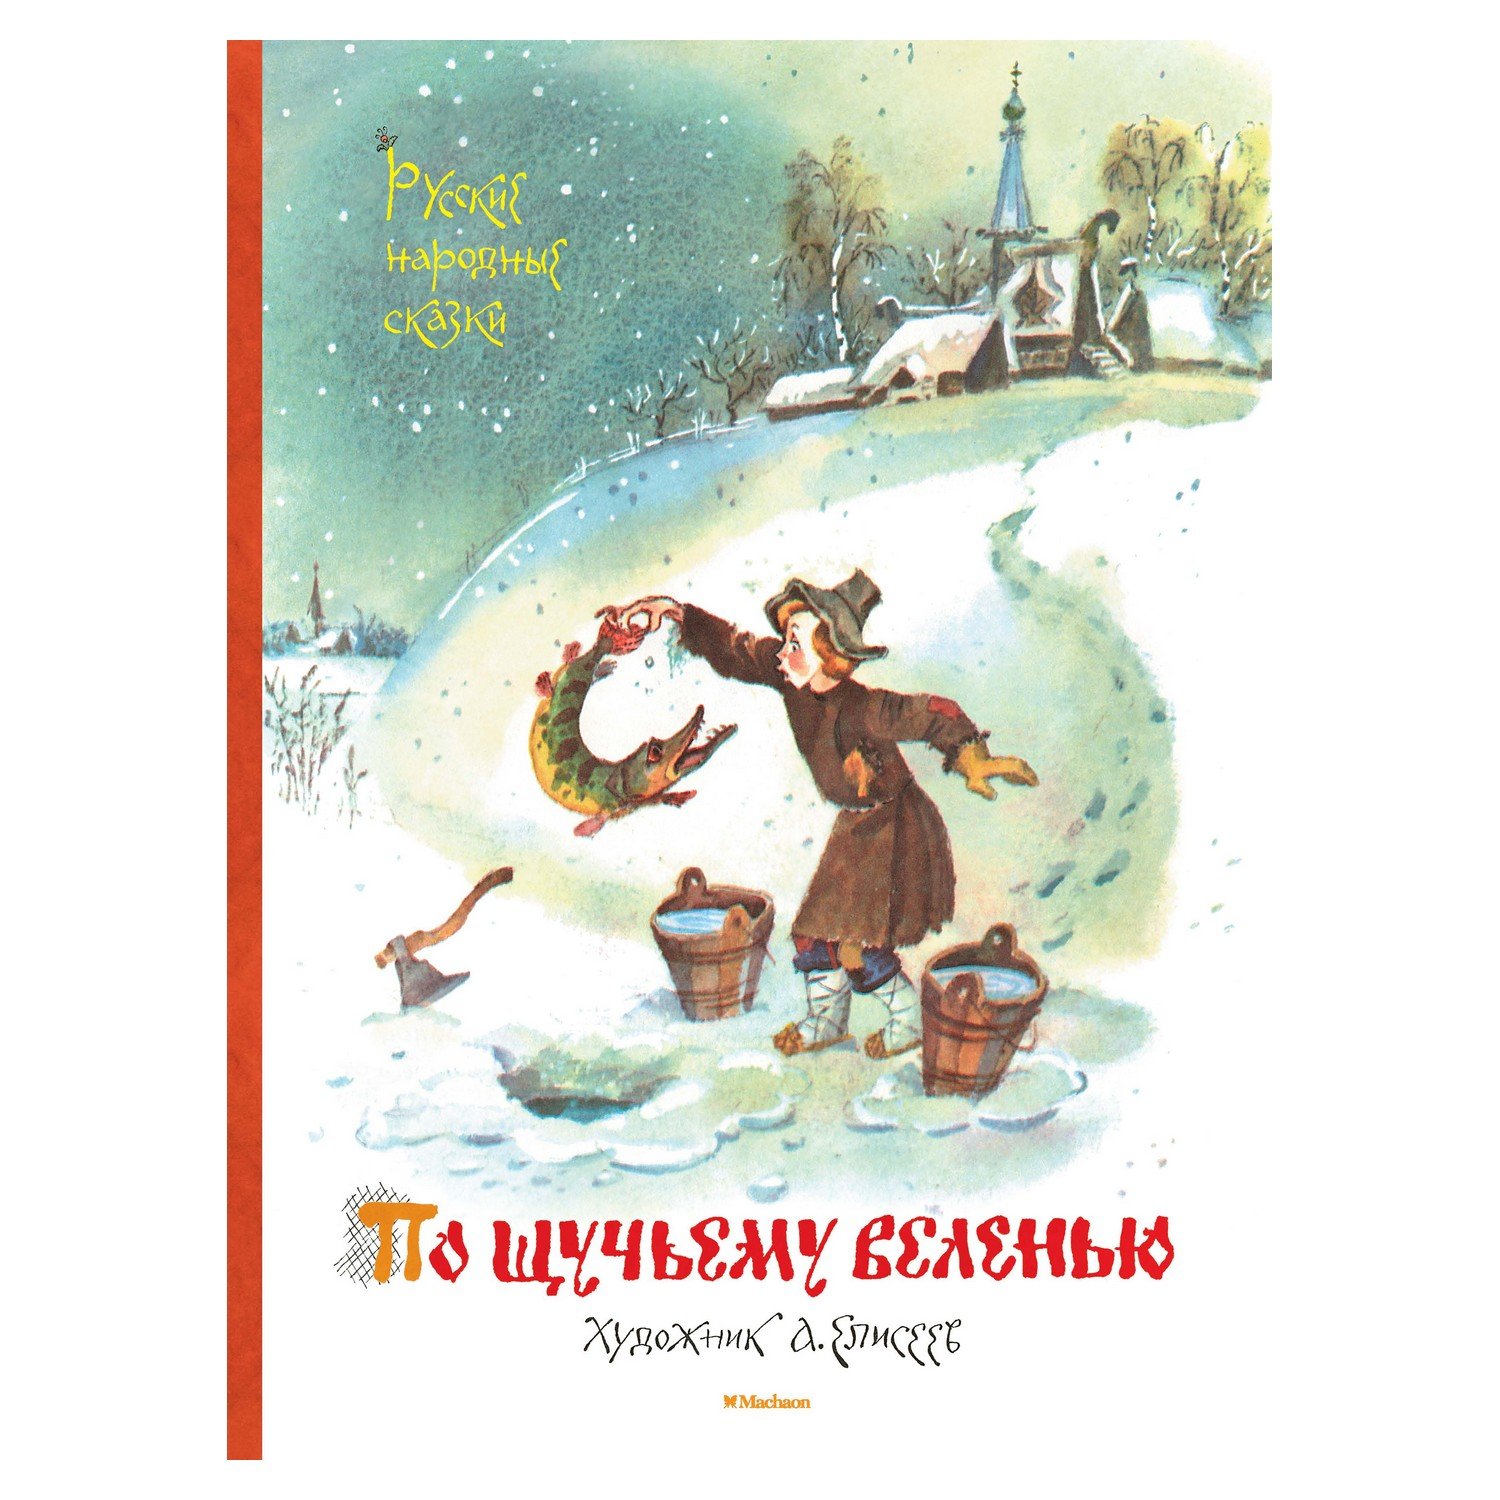 Книга русские народные сказки по-щучьему велению